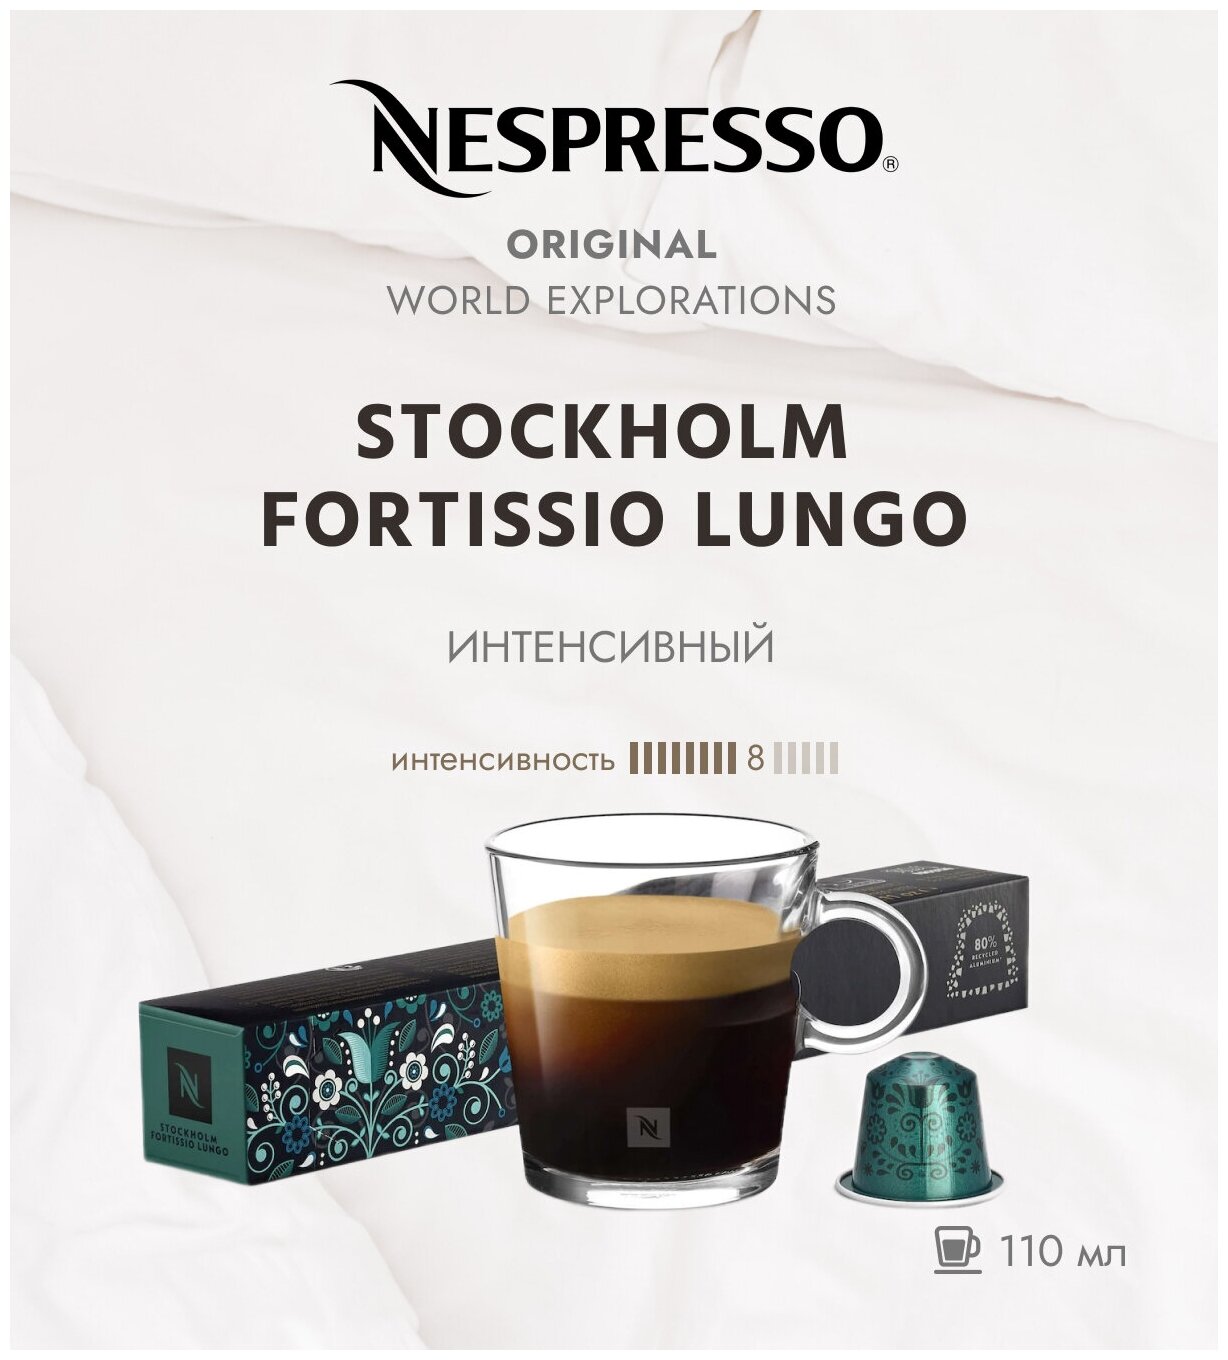 Кофе в капсулах Nespresso World Explorations Stockholm Fortissio Lungo 110 мл. 8/13 набор капсул Неспрессо Original 10 шт